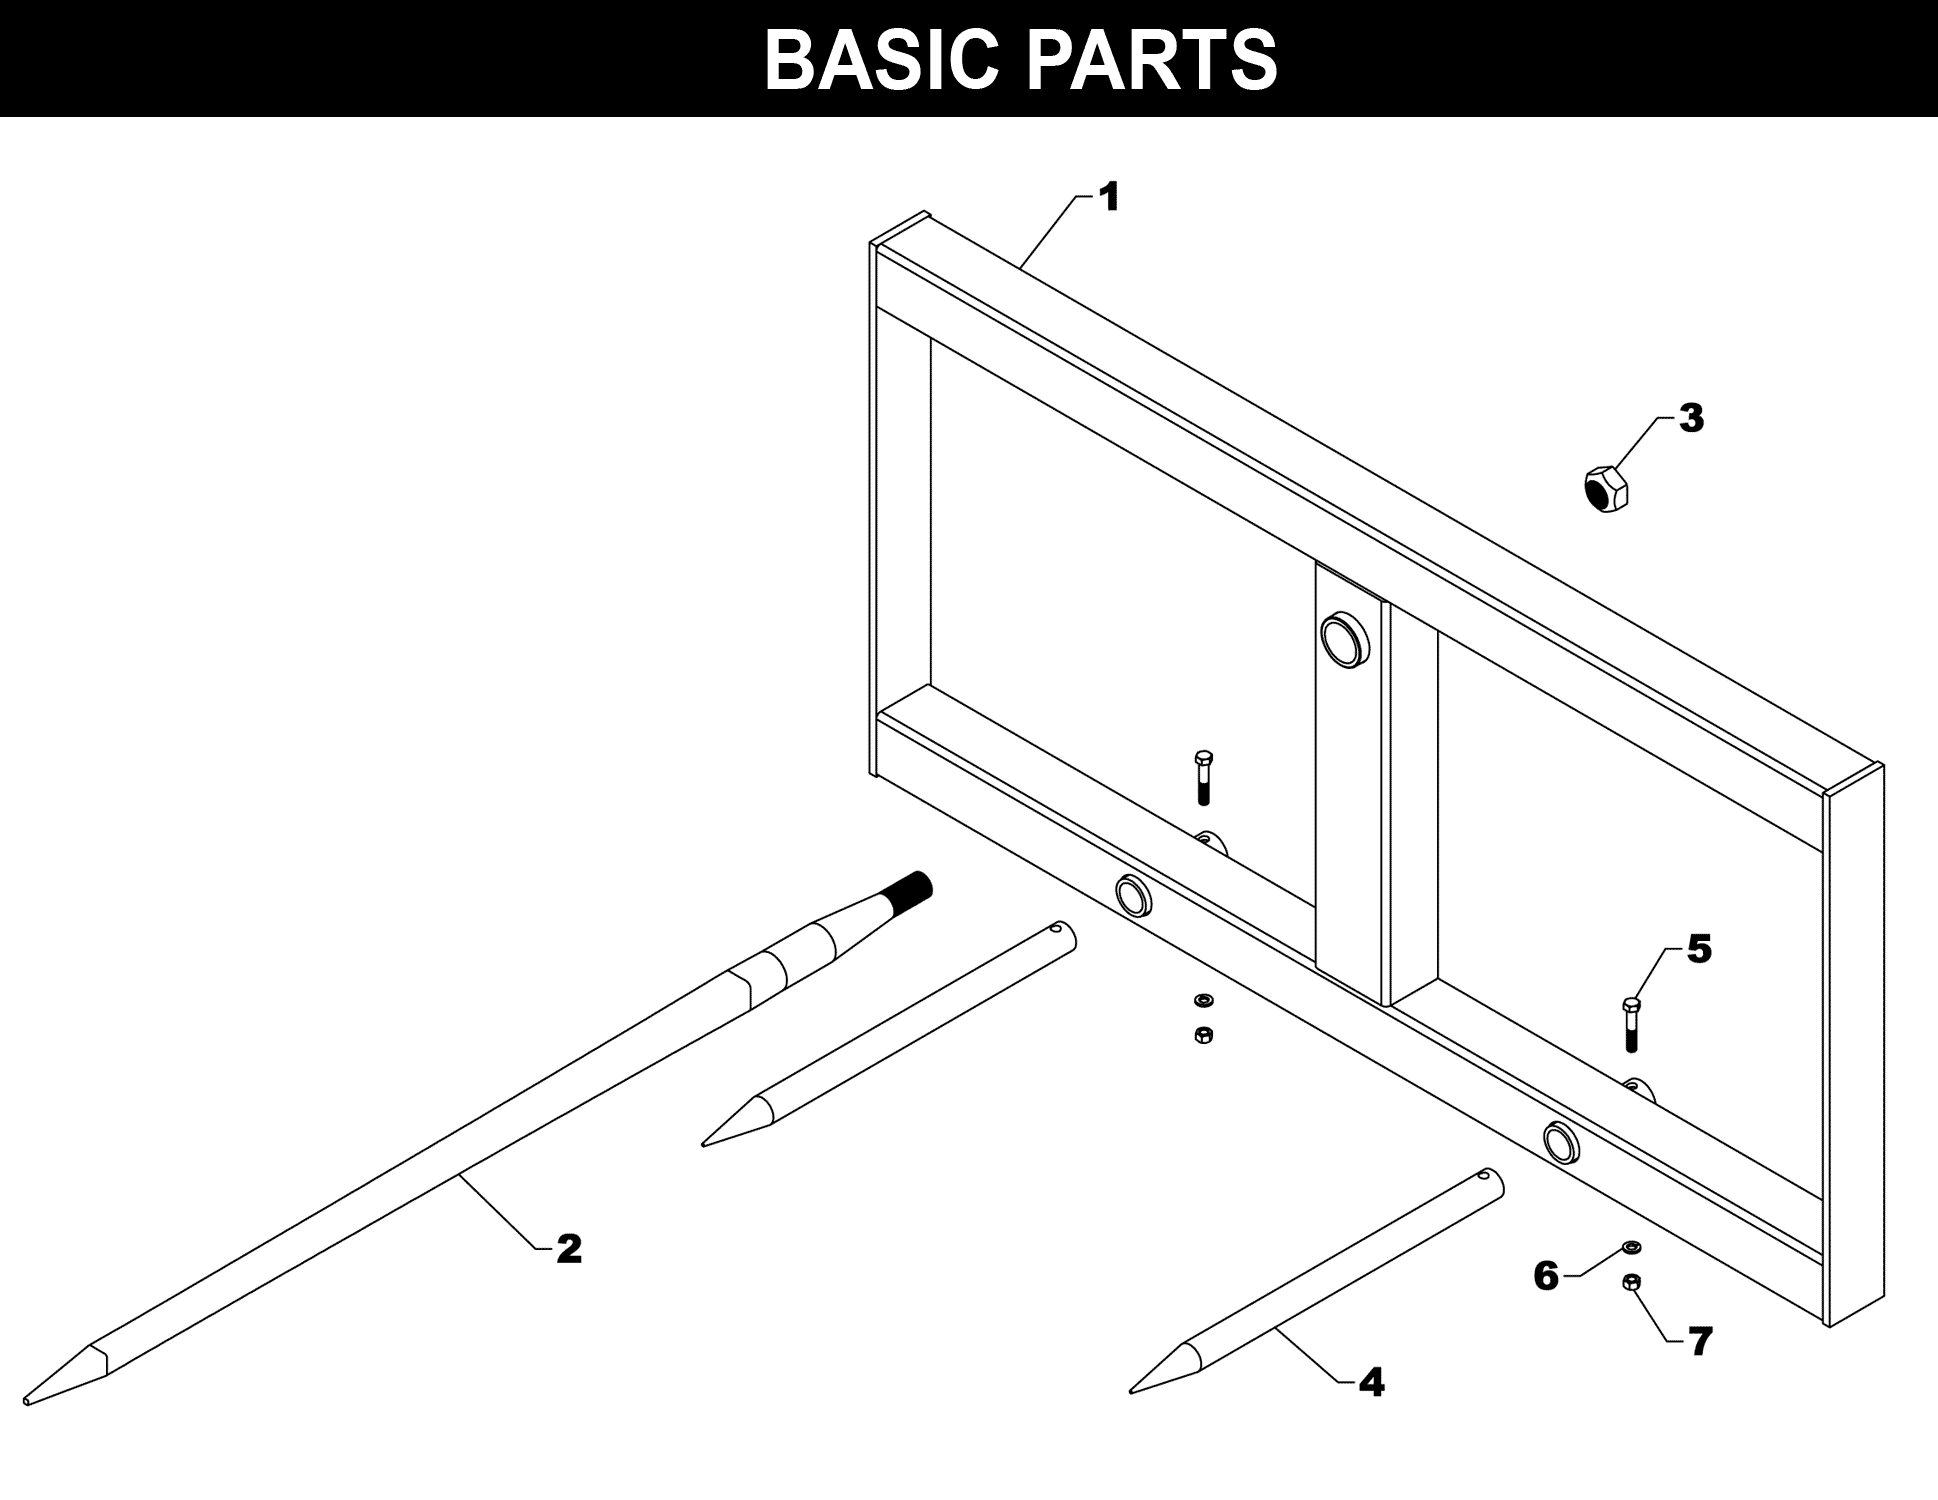 SP-43 Basic Parts